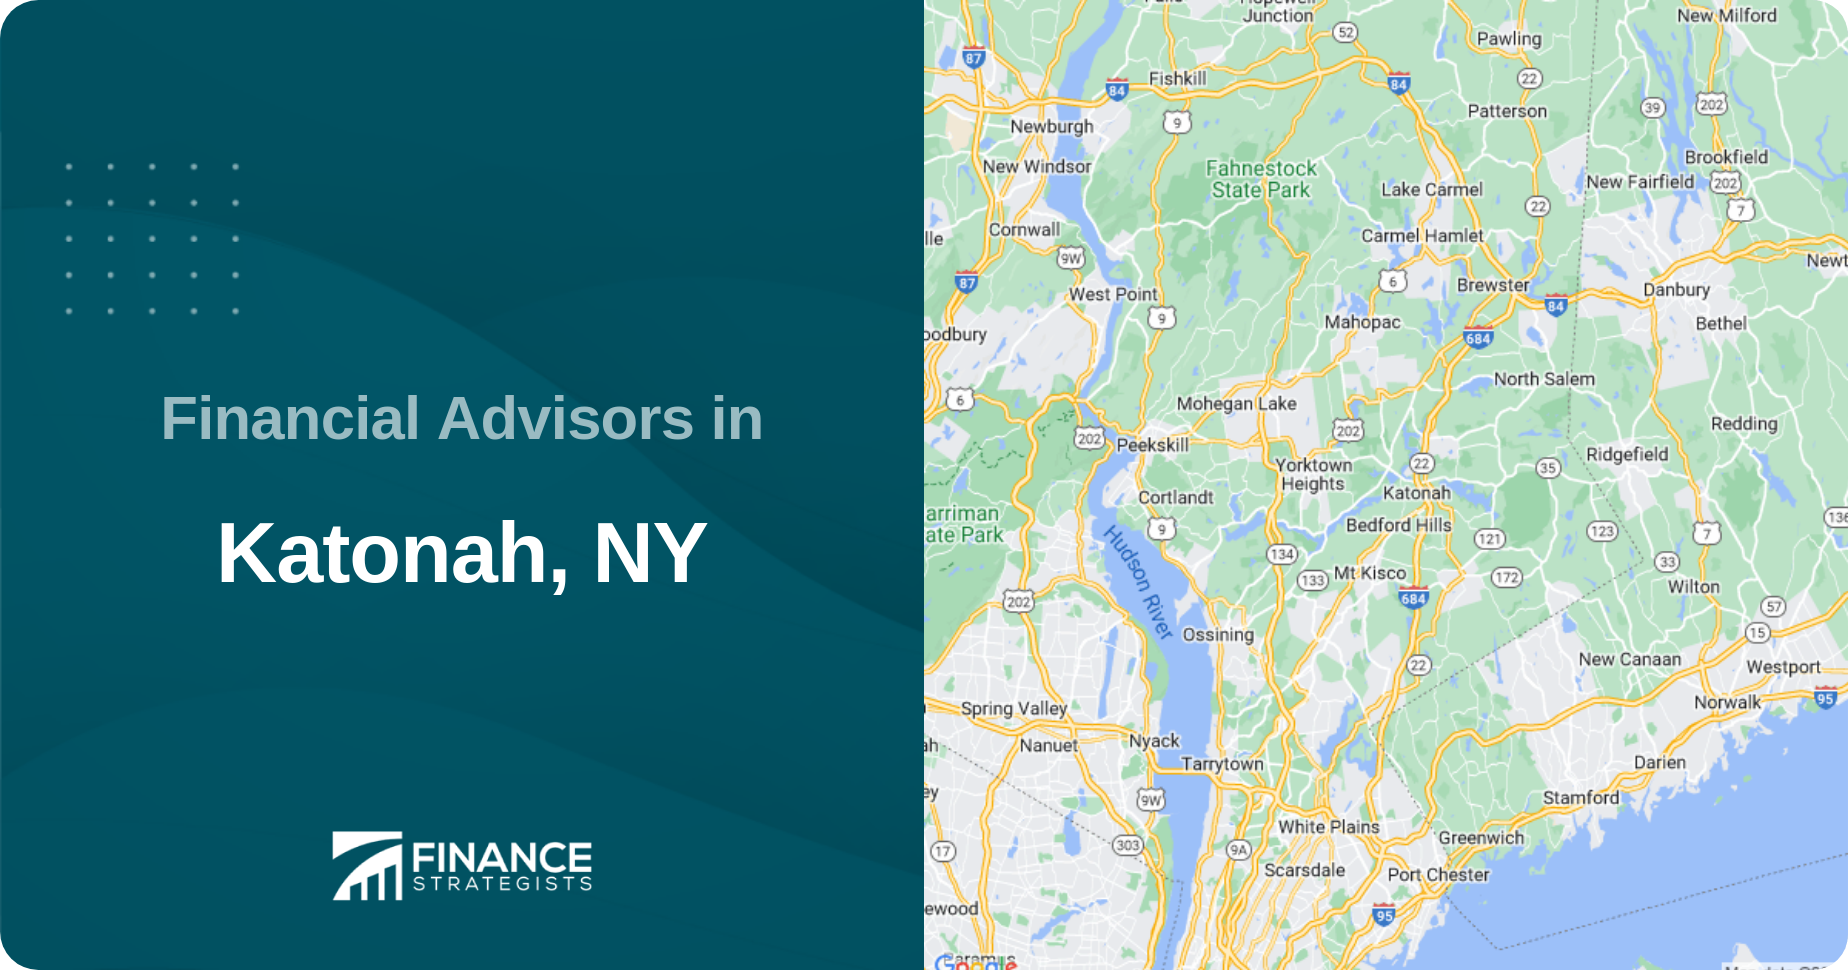 Financial Advisors in Katonah, NY